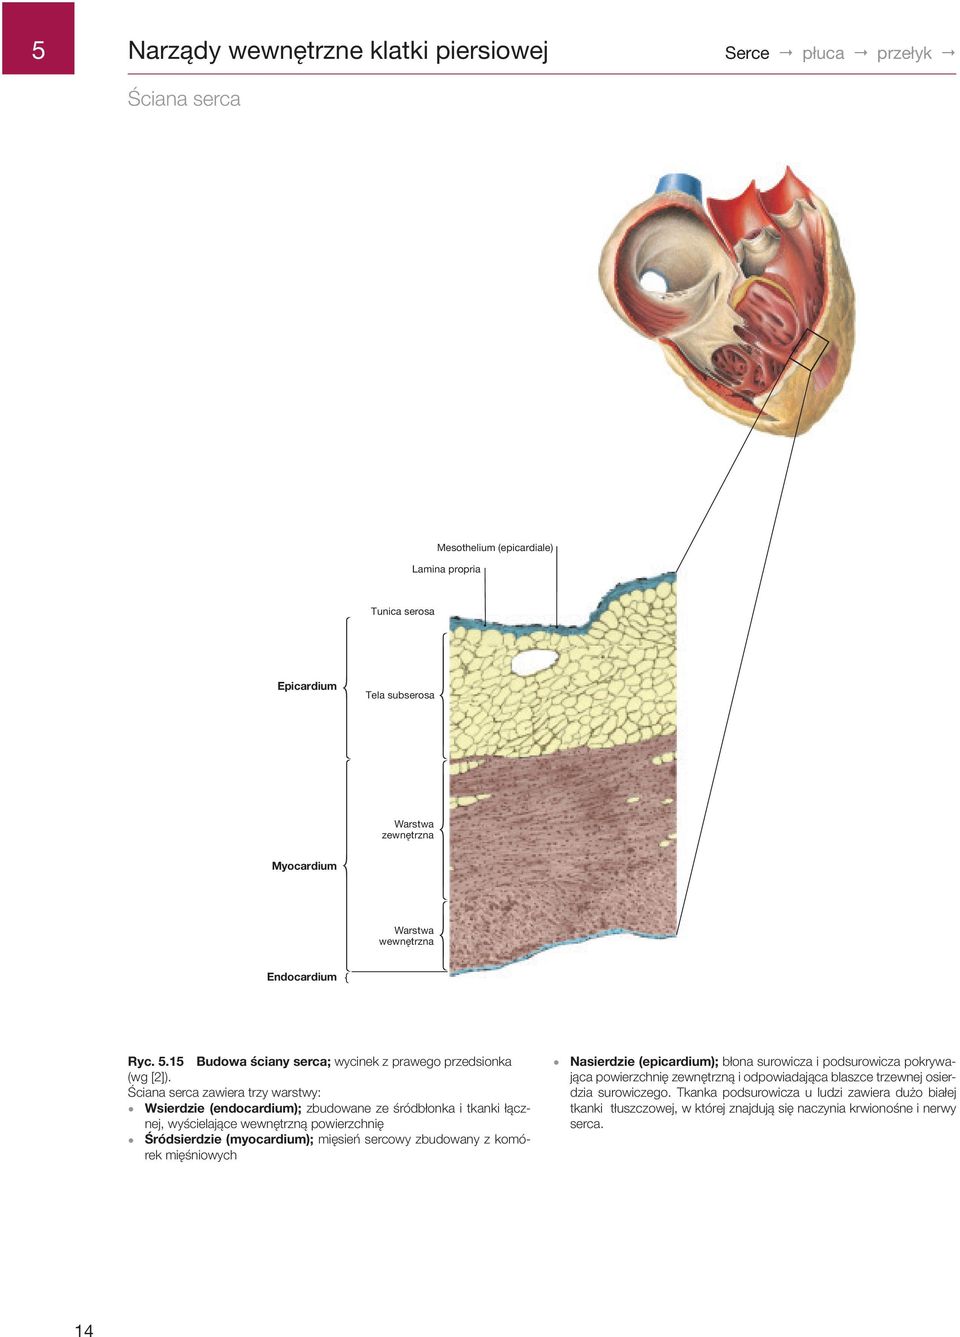 Ściana serca zawiera trzy warstwy: Wsierdzie (endocardium); zbudowane ze śródbłonka i tkanki łącznej, wyścielające wewnętrzną powierzchnię Śródsierdzie (myocardium); mięsień sercowy zbudowany z